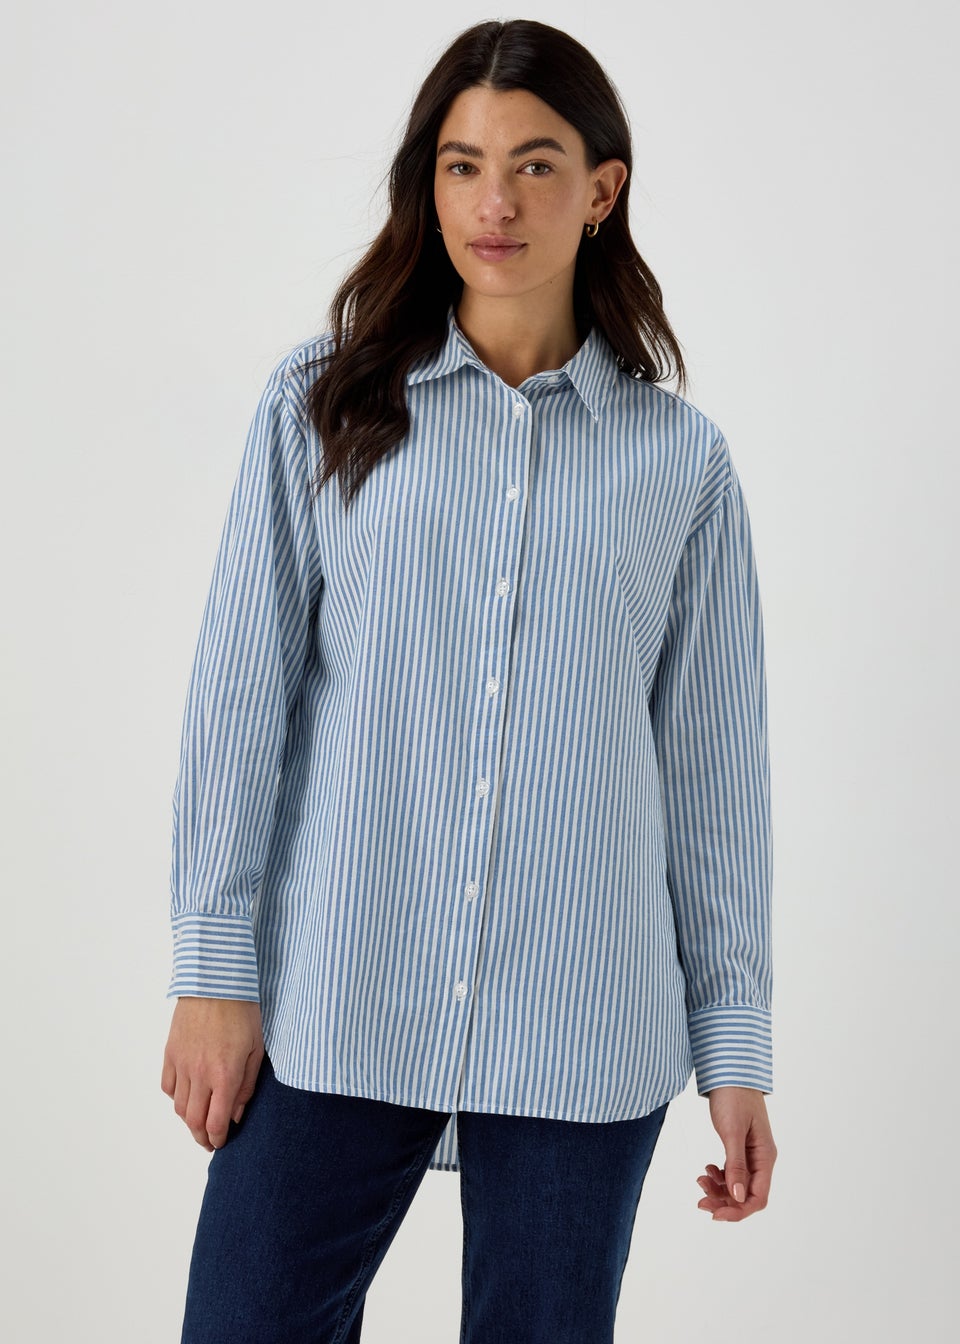 Womens Long Sleeve Tops & Long Sleeve Shirts - Matalan